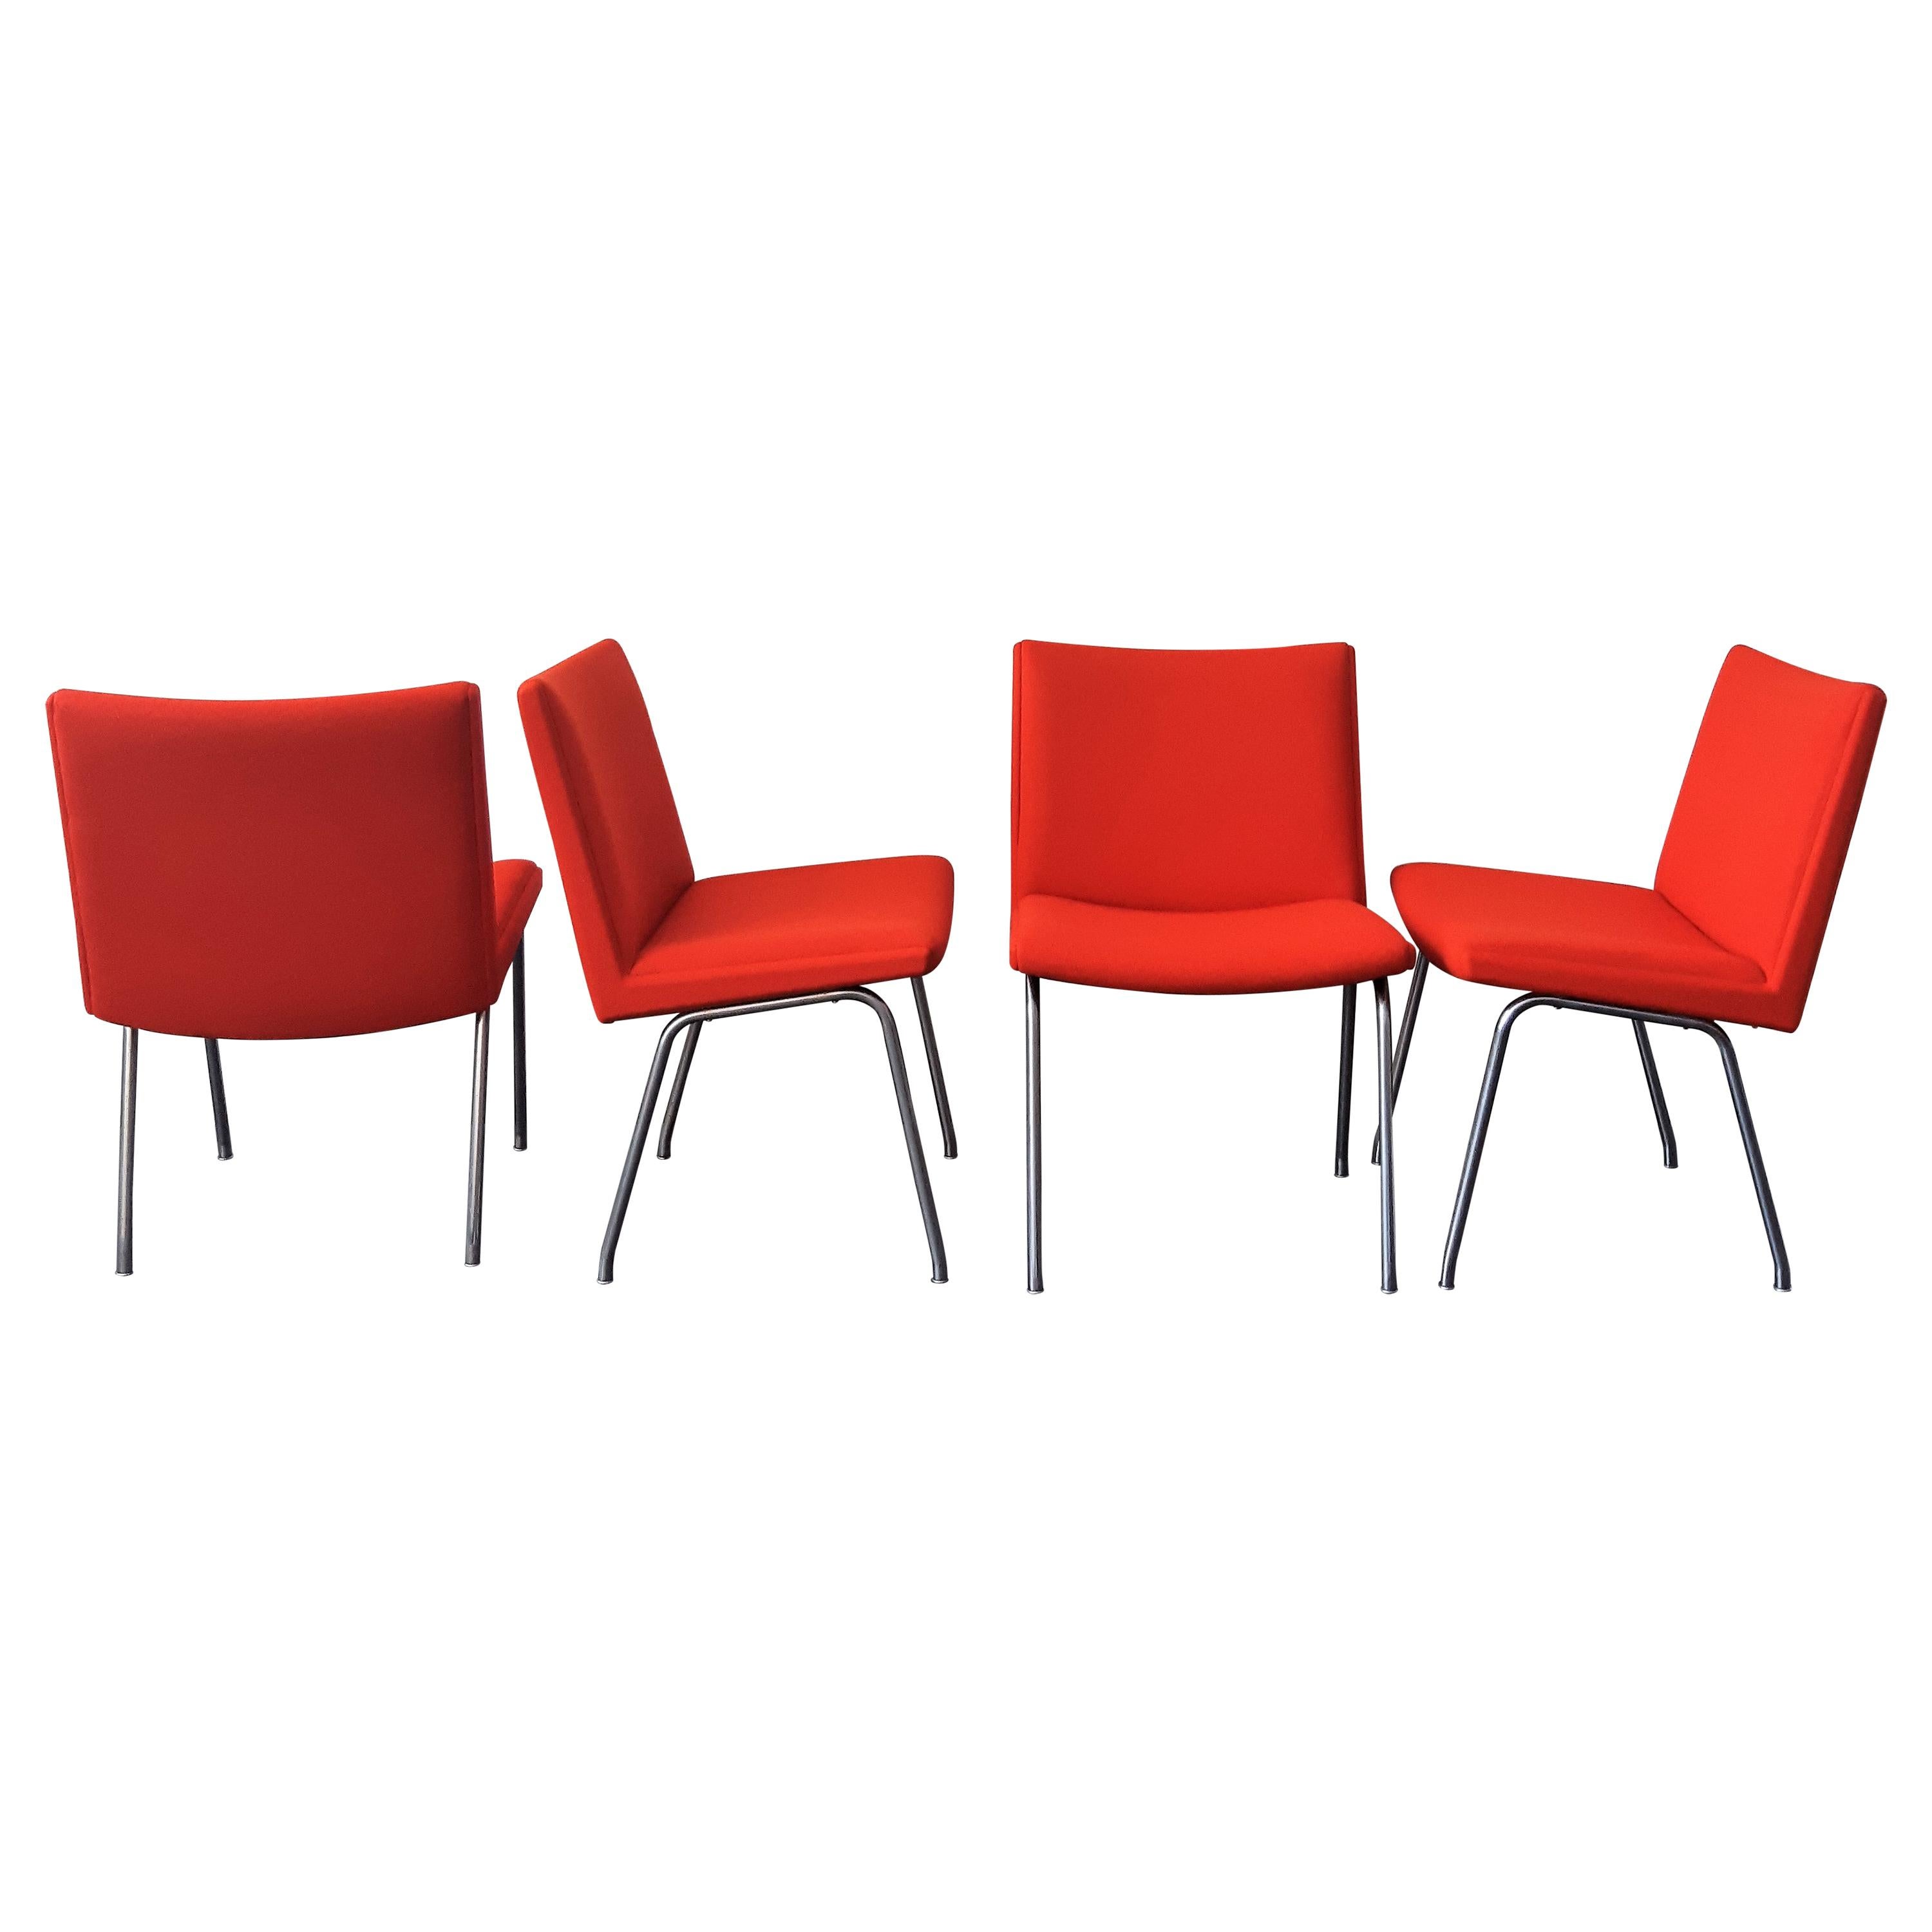 https://a.1stdibscdn.com/set-of-4-model-airport-dining-chairs-by-hans-wegner-for-ap-stolen-denmark-for-sale/1121189/f_239775721622574742850/23977572_master.jpg